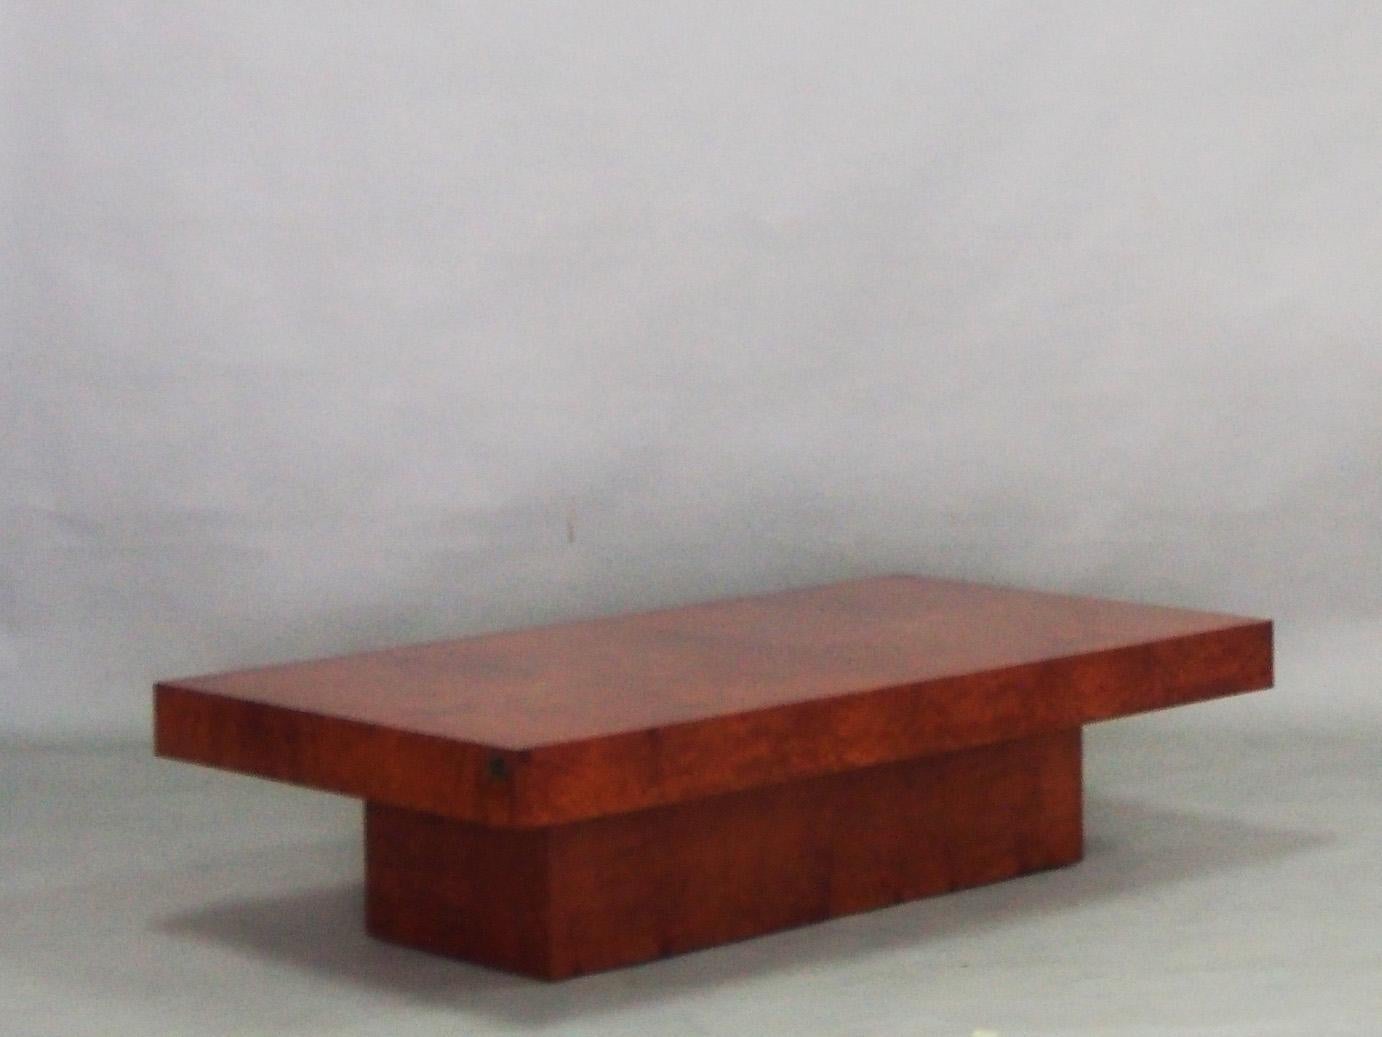 Table basse rectangulaire en ronce de noyer de Fabrizio Smania pour Studio Mania Interini.
Pièce entièrement restaurée, vernie à la main par notre propre équipe d'artisans.